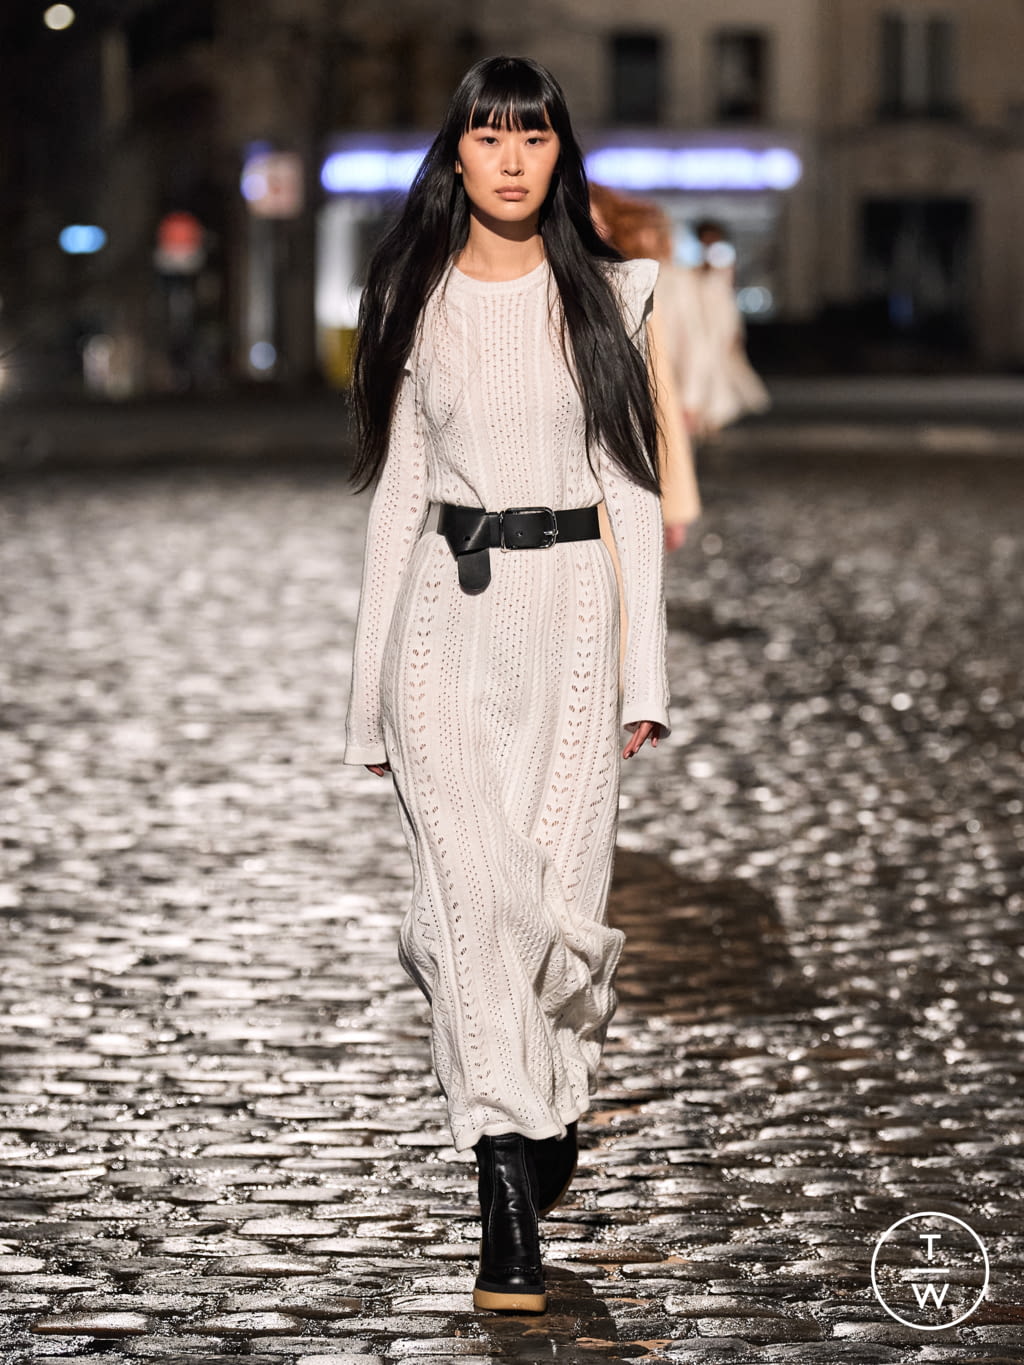 Chloé FW21 womenswear #10 - Tagwalk: The Fashion Search Engine